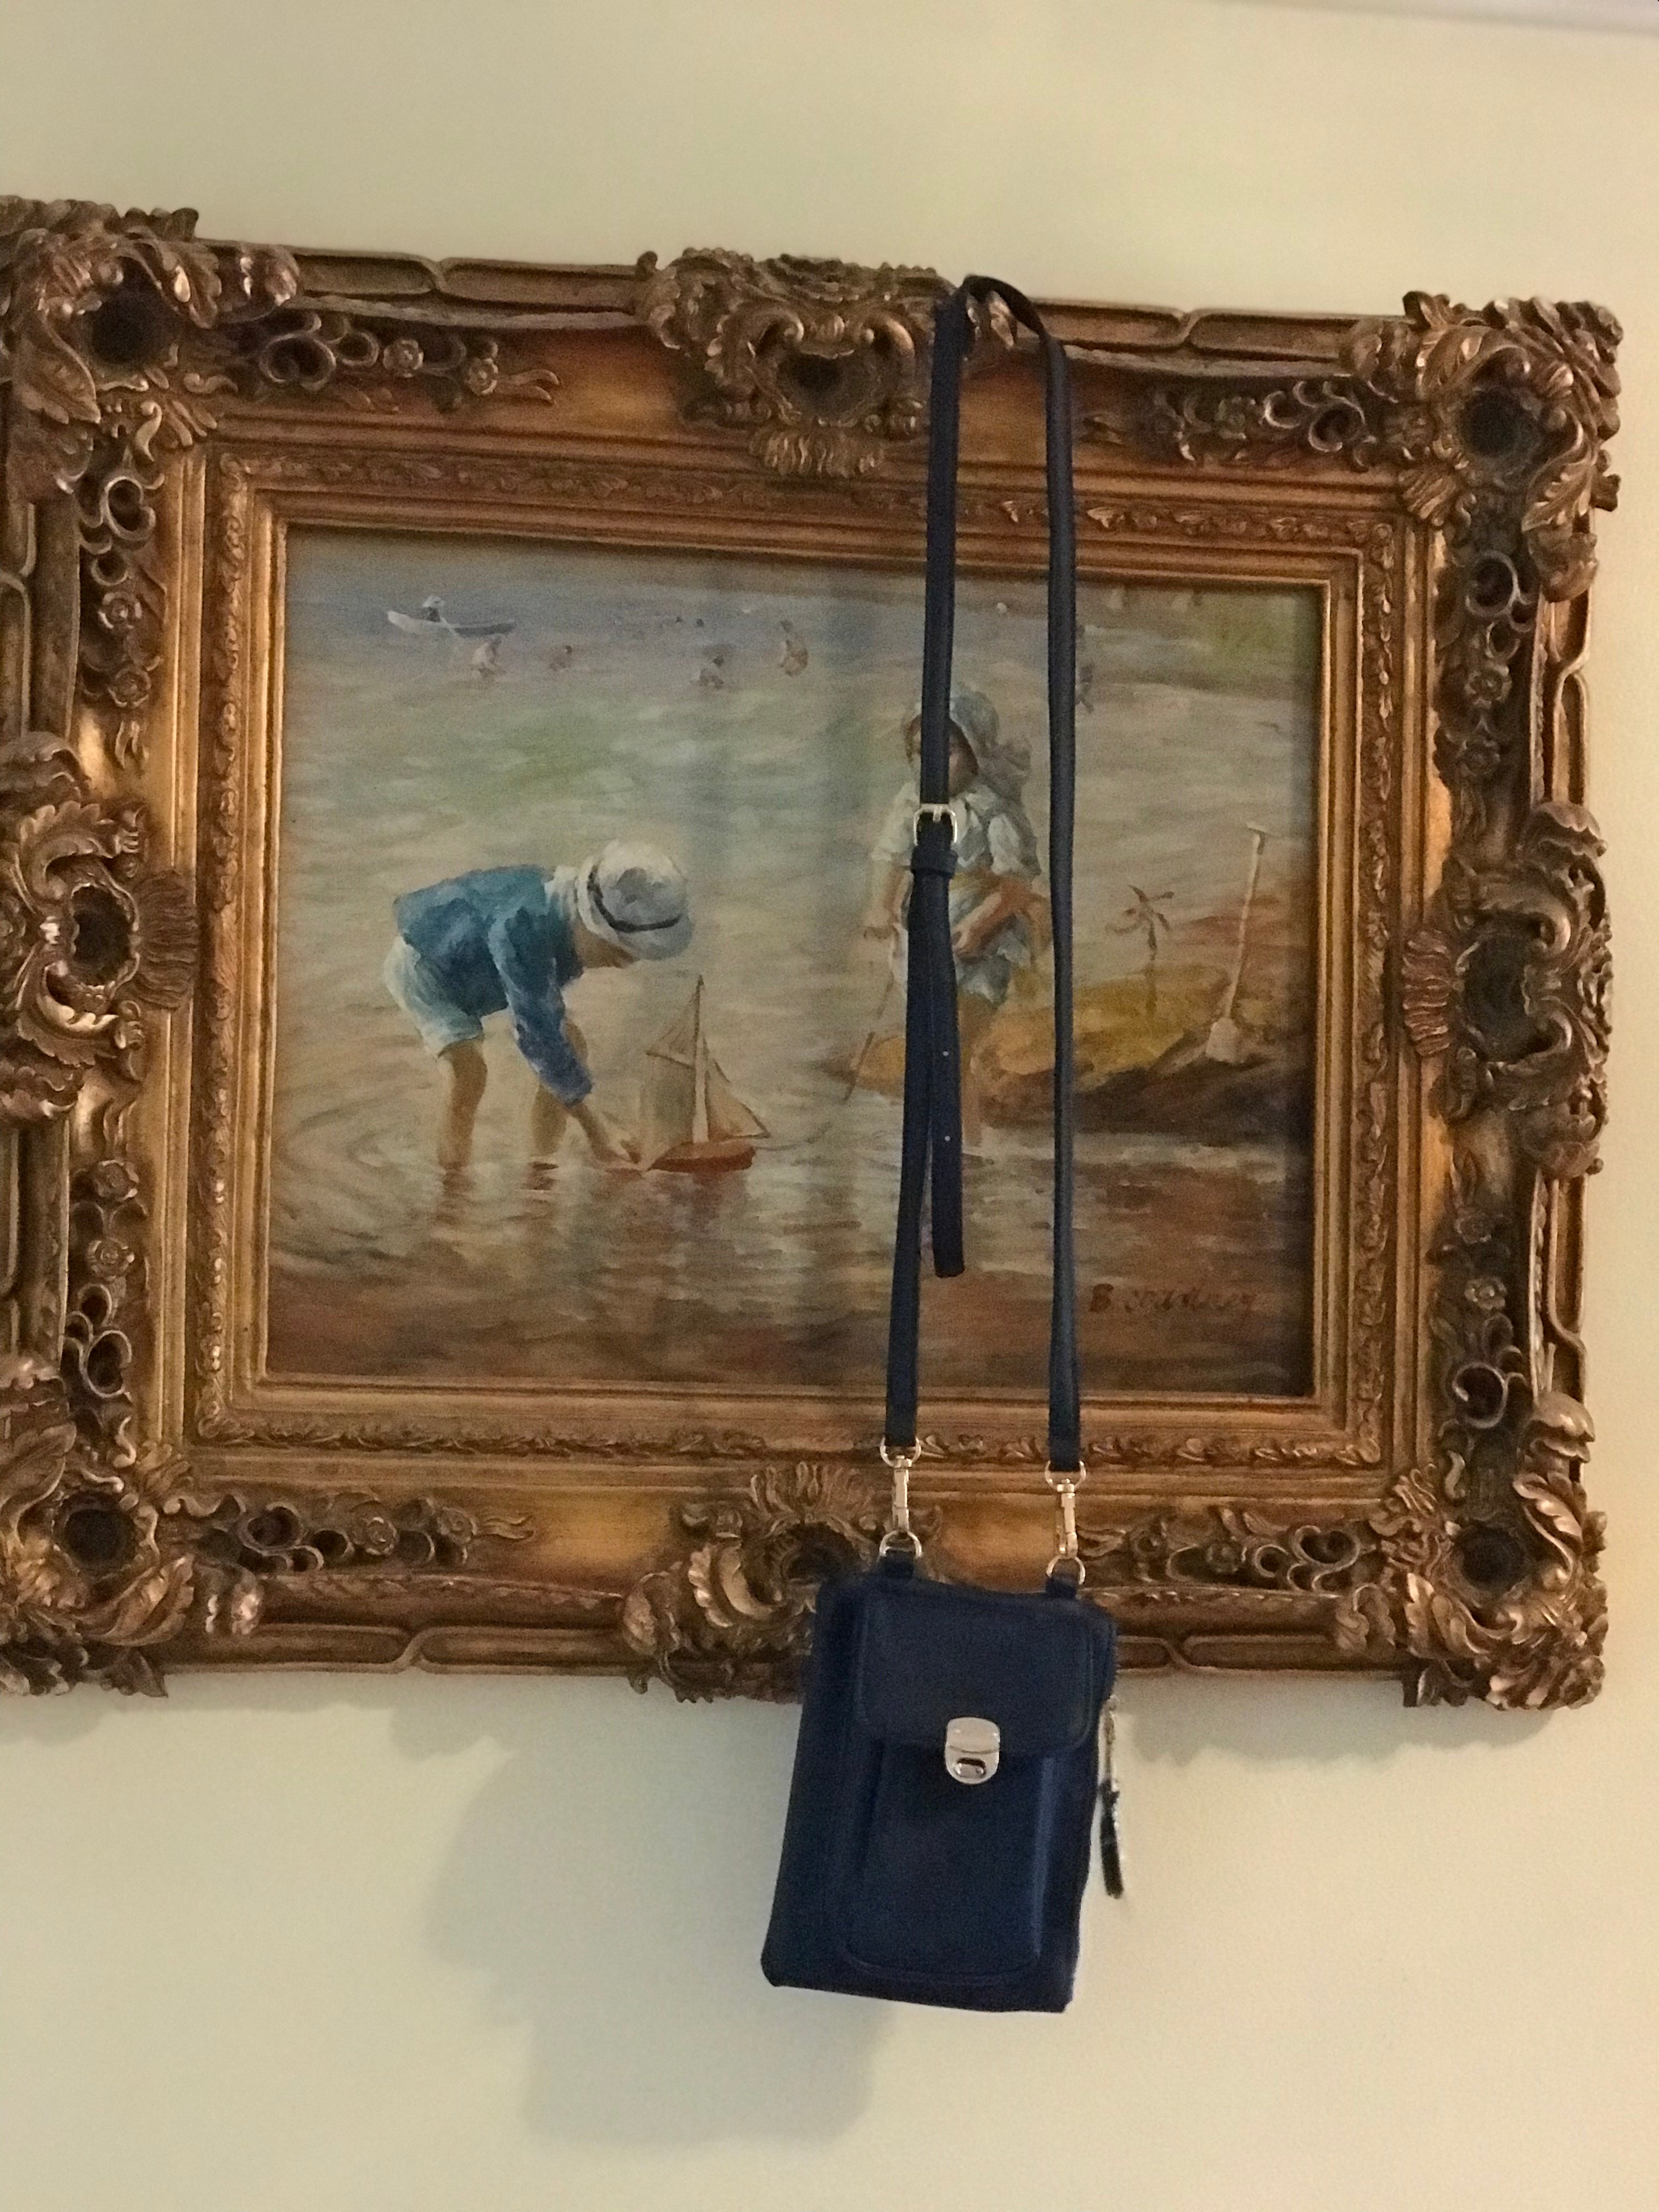 Navy Blue Crossbody Bag